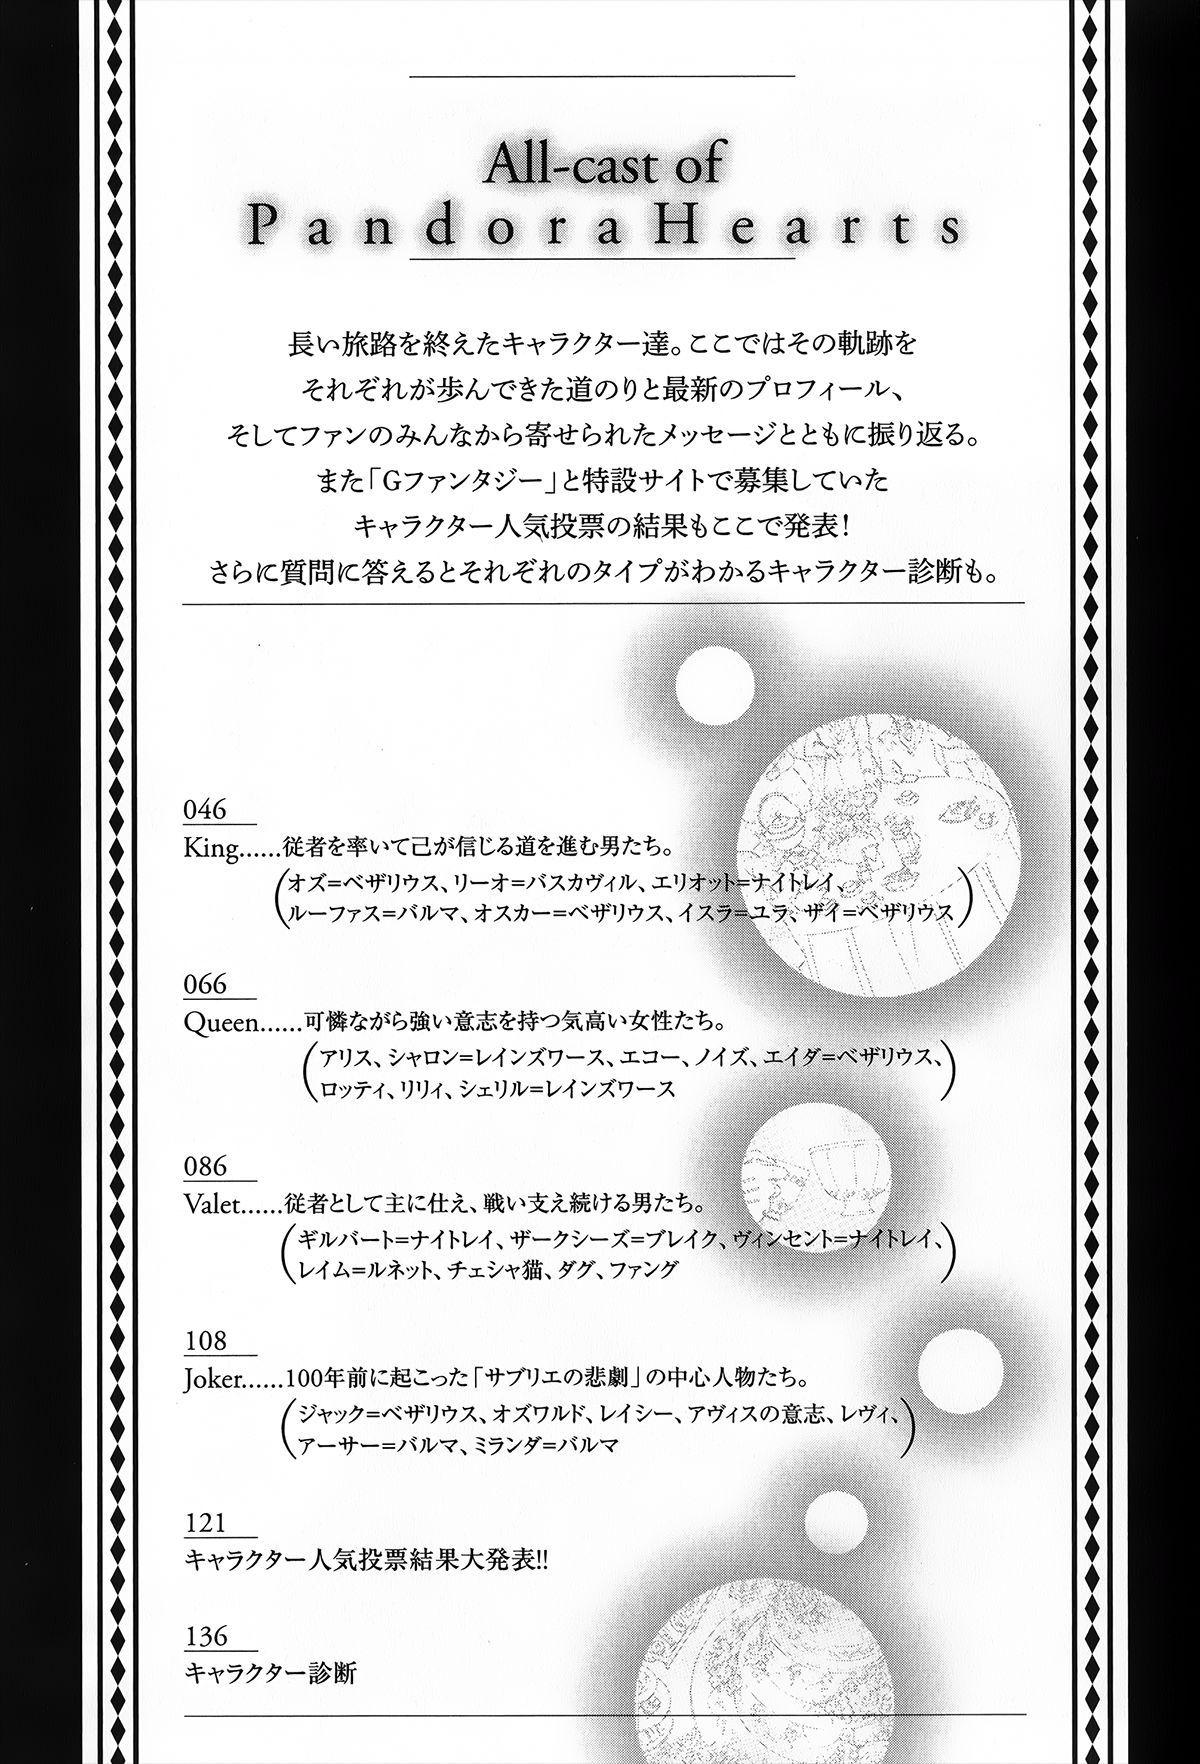 Pandora Hearts Guidebook 24+1: Last Dance パンドラハーツ オフィシャルガイド 24 + 1 ~Last Dance! 48